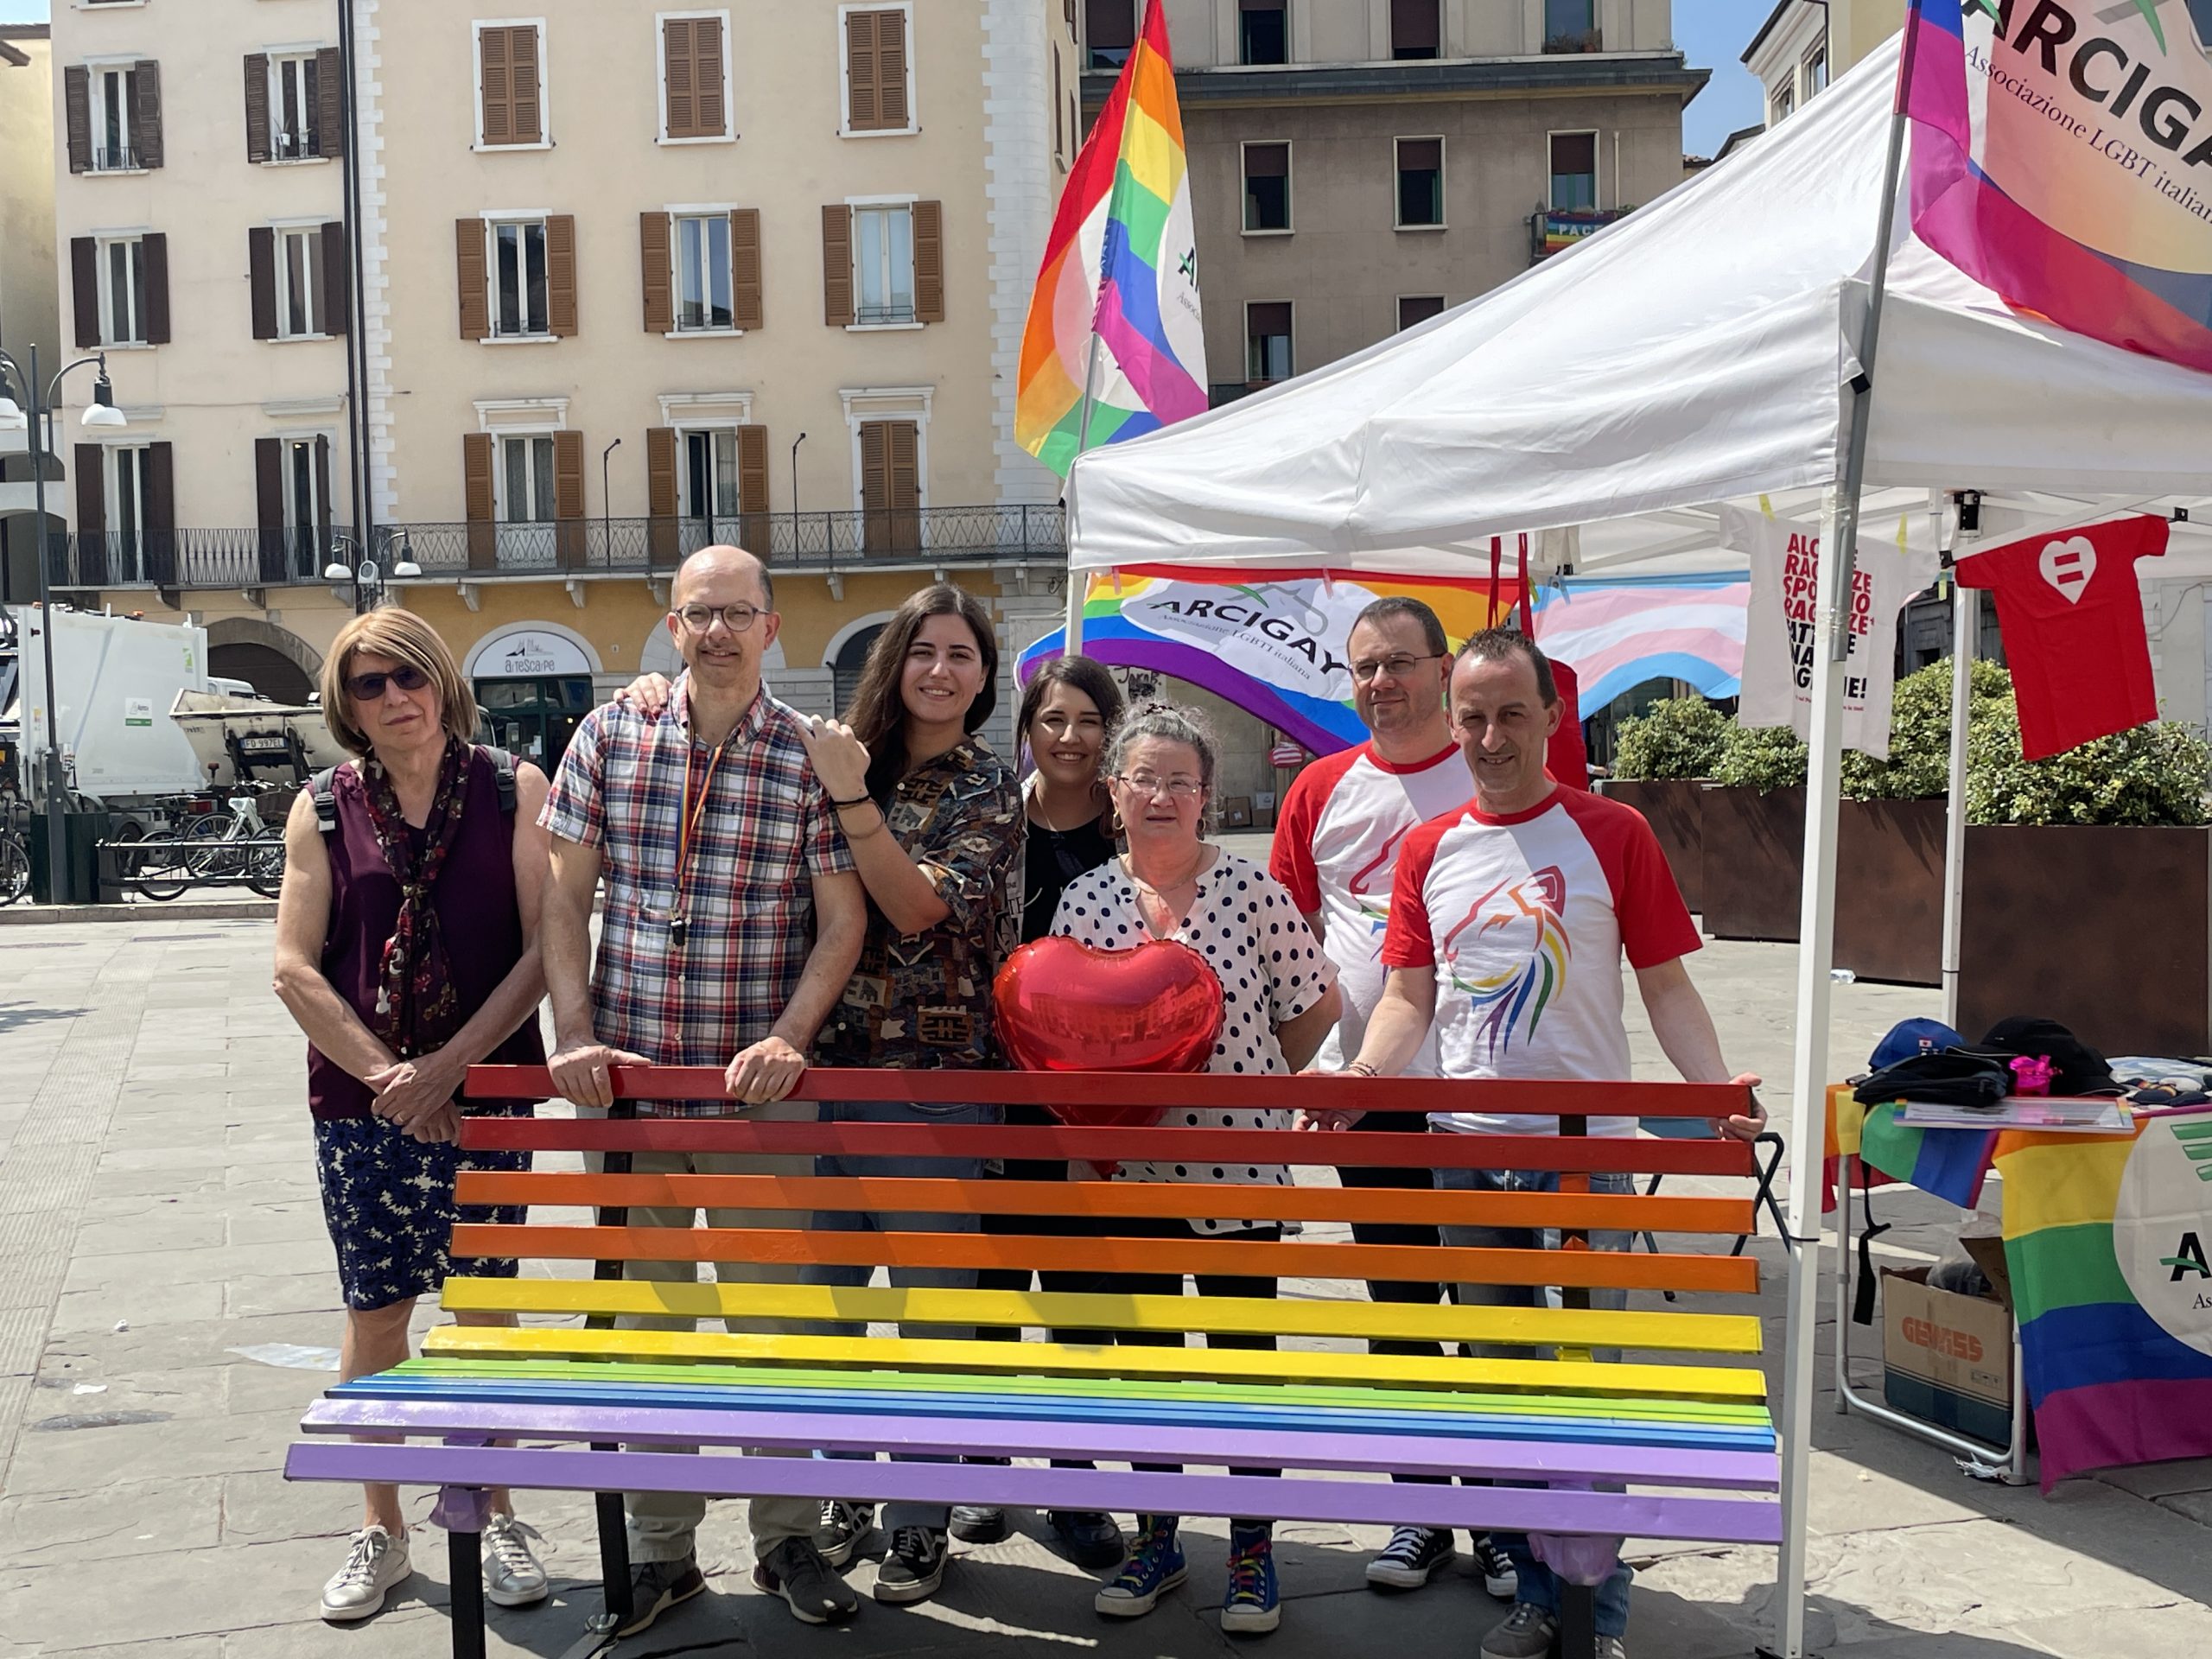 A Brescia la “panchina arcobaleno itinerante” contro l’omofobia